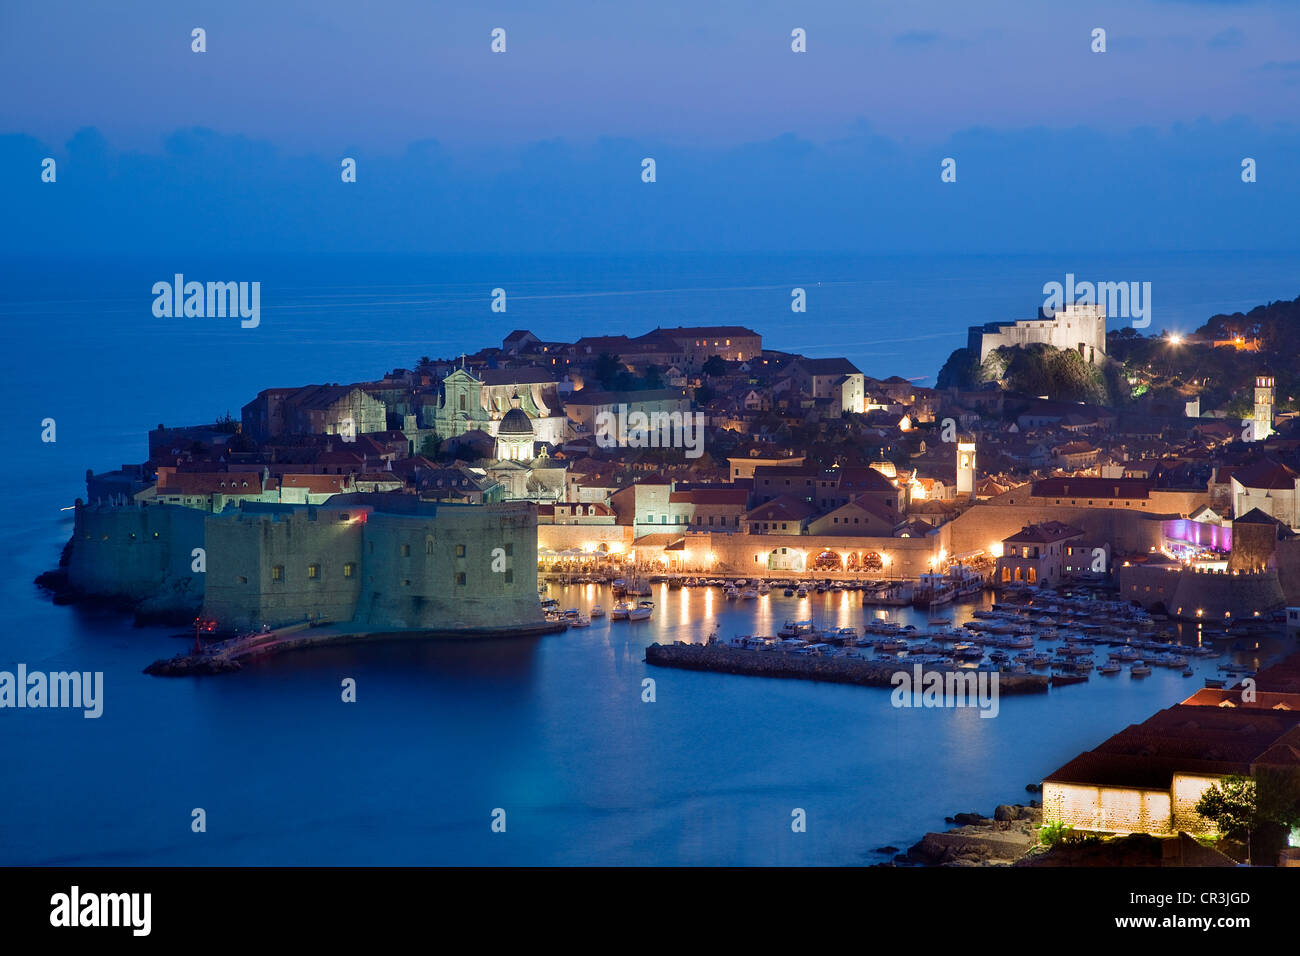 La Croatie, Kvarner, île de la côte dalmate, Dubrovnik, centre historique, patrimoine mondial de l'UNESCO Banque D'Images